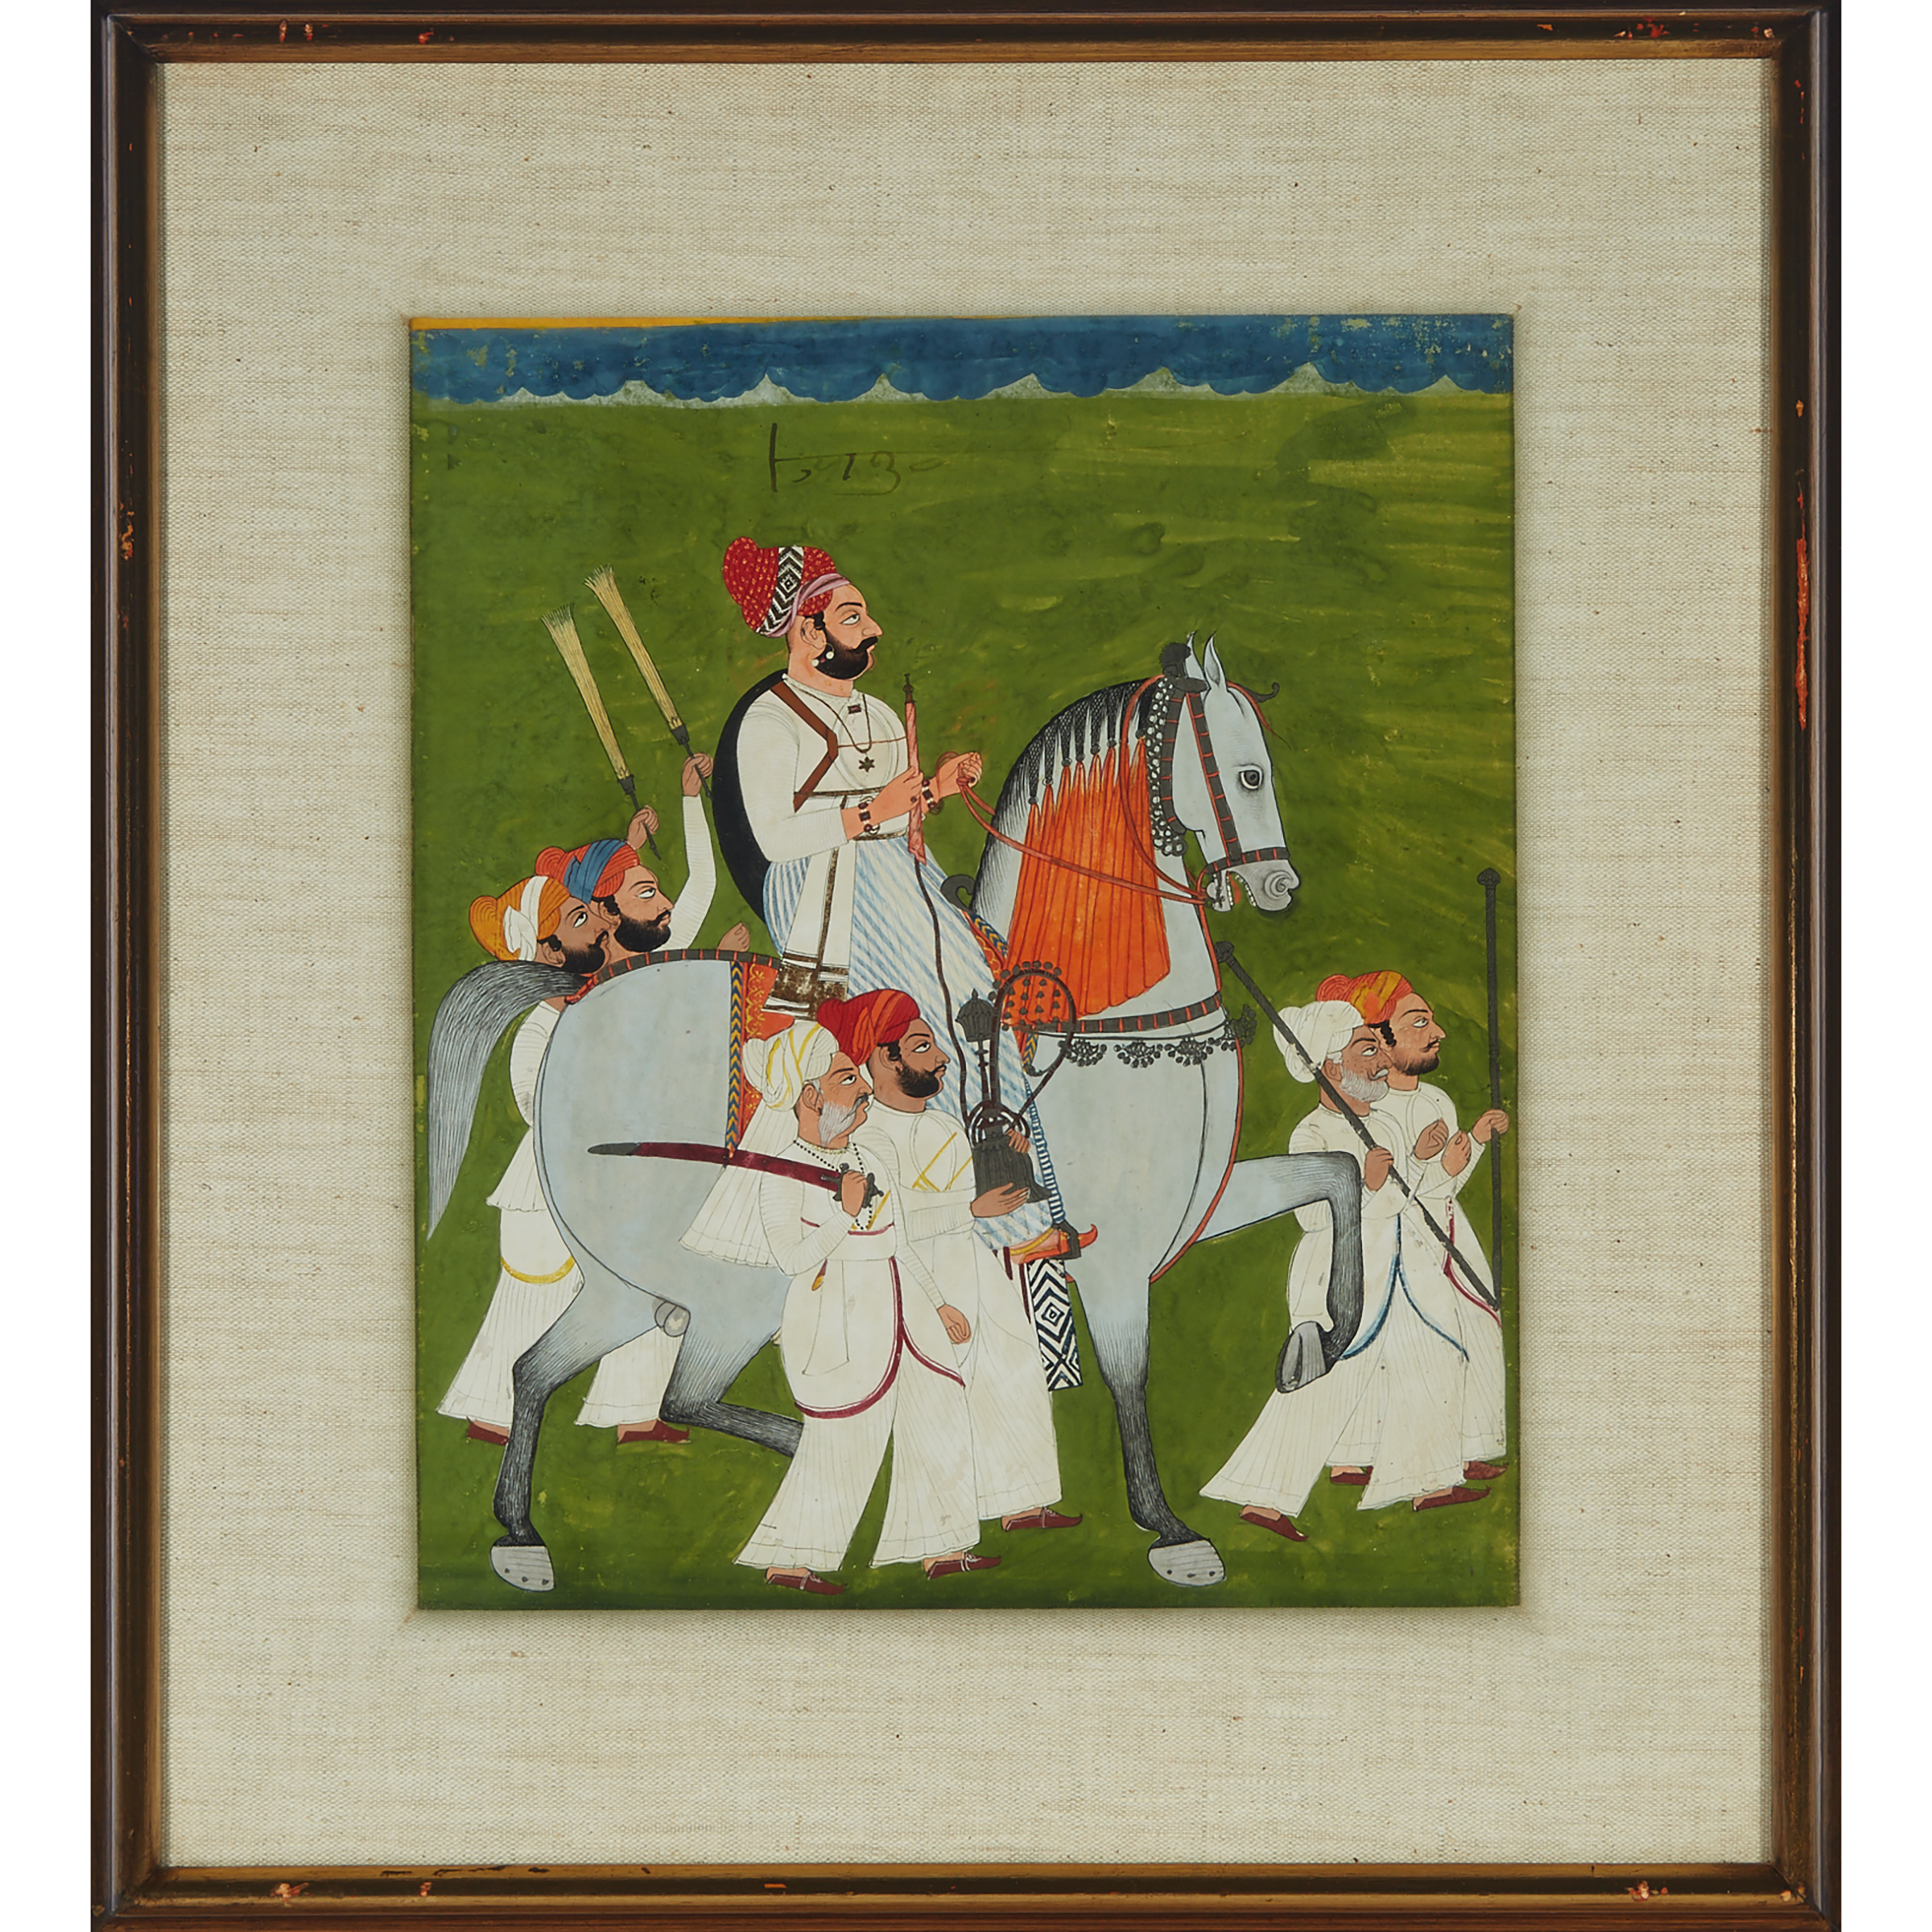 Rajasthan School, Equestrian Portrait, Circa 1800